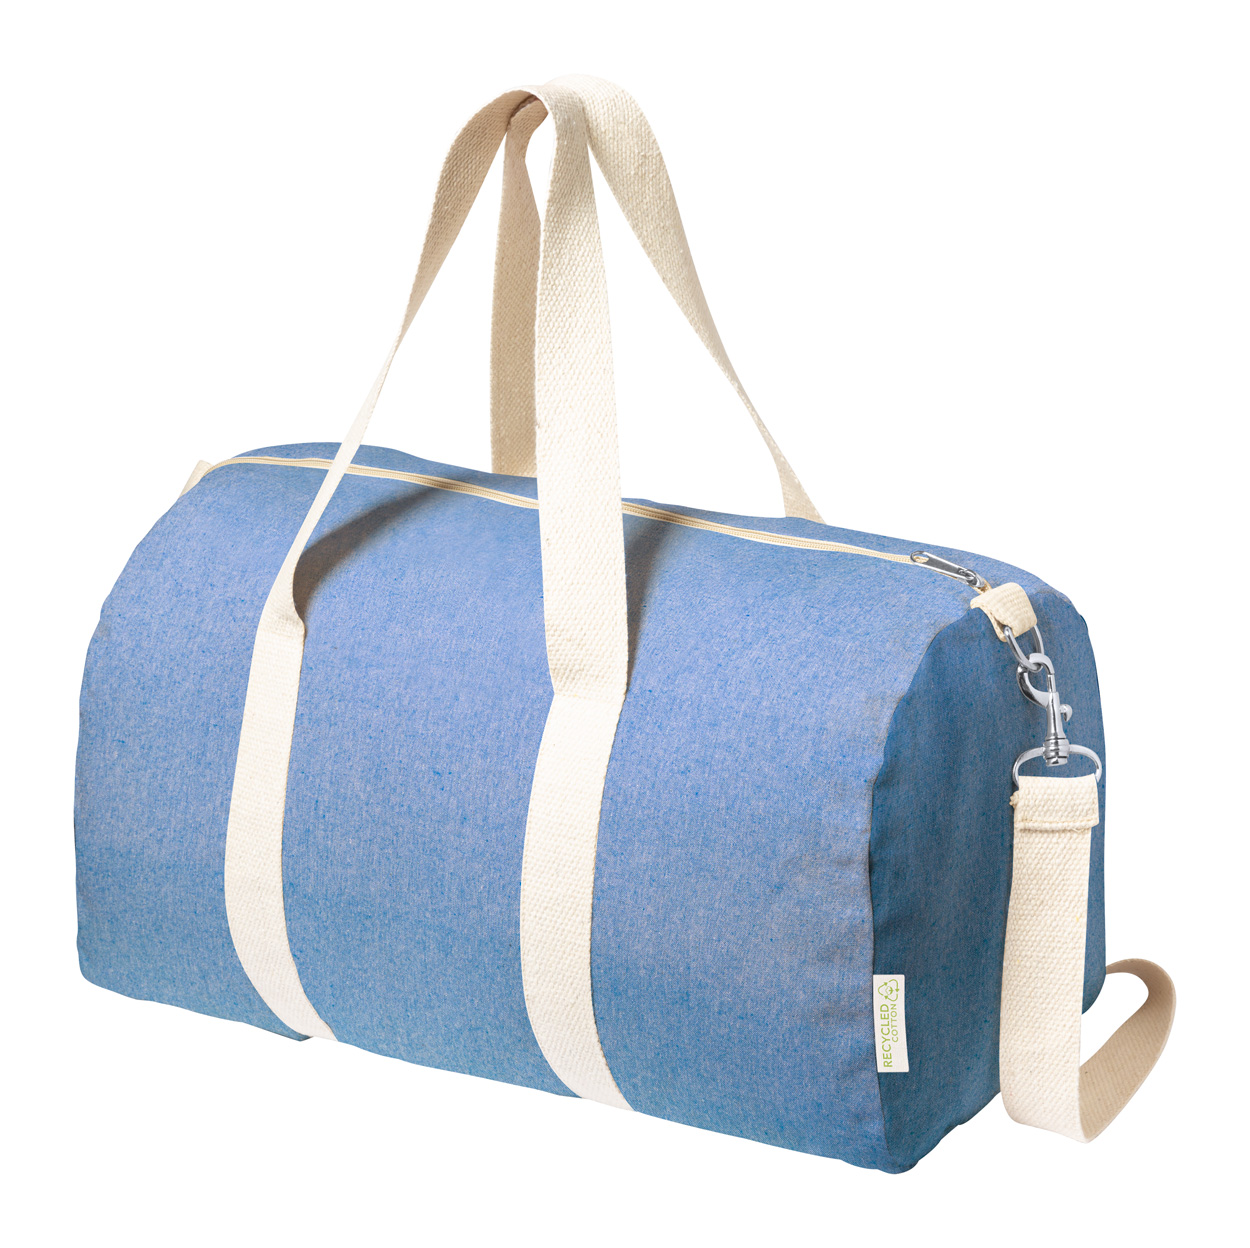 Golduck cotton sports bag - blue